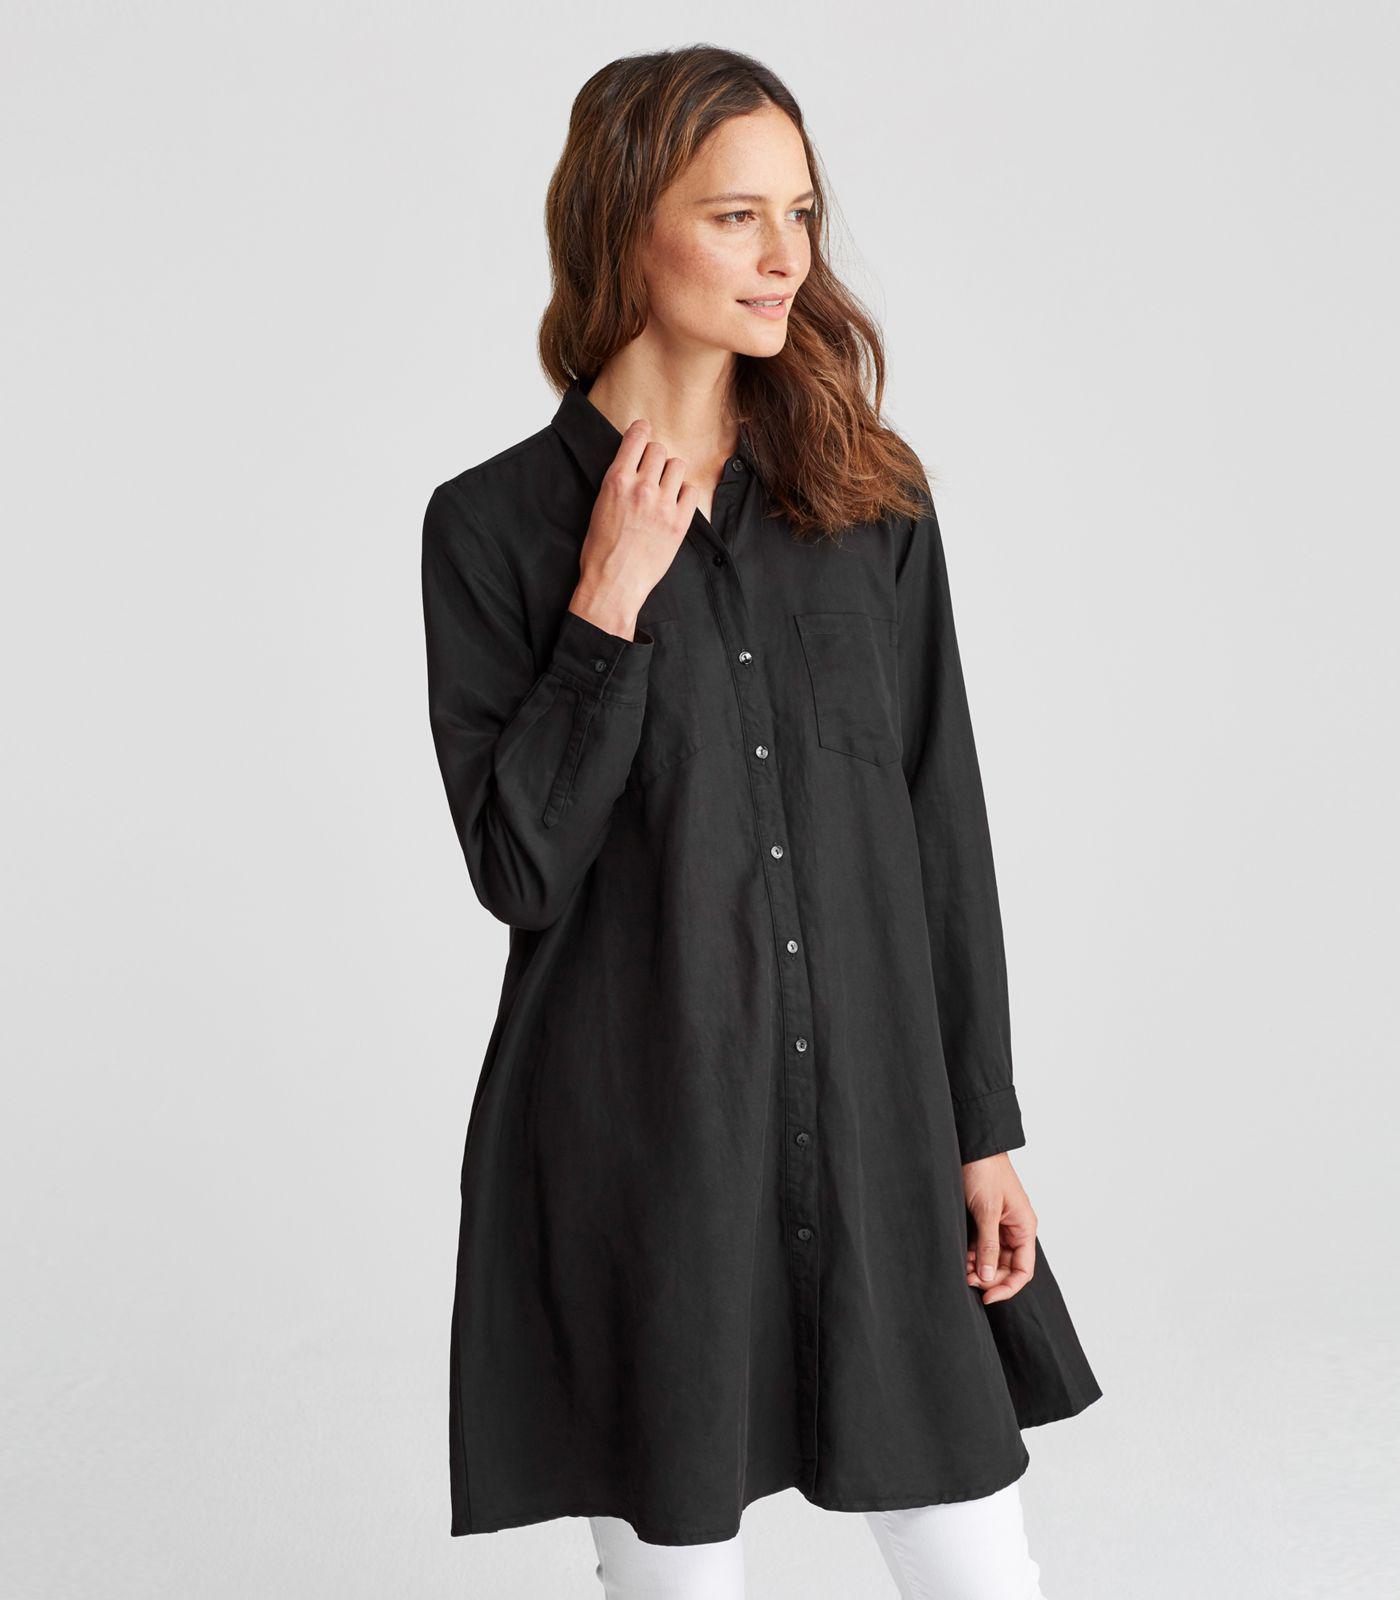 Eileen Fisher Tencel Linen Classic Collar A-line Shirt Dress in Black